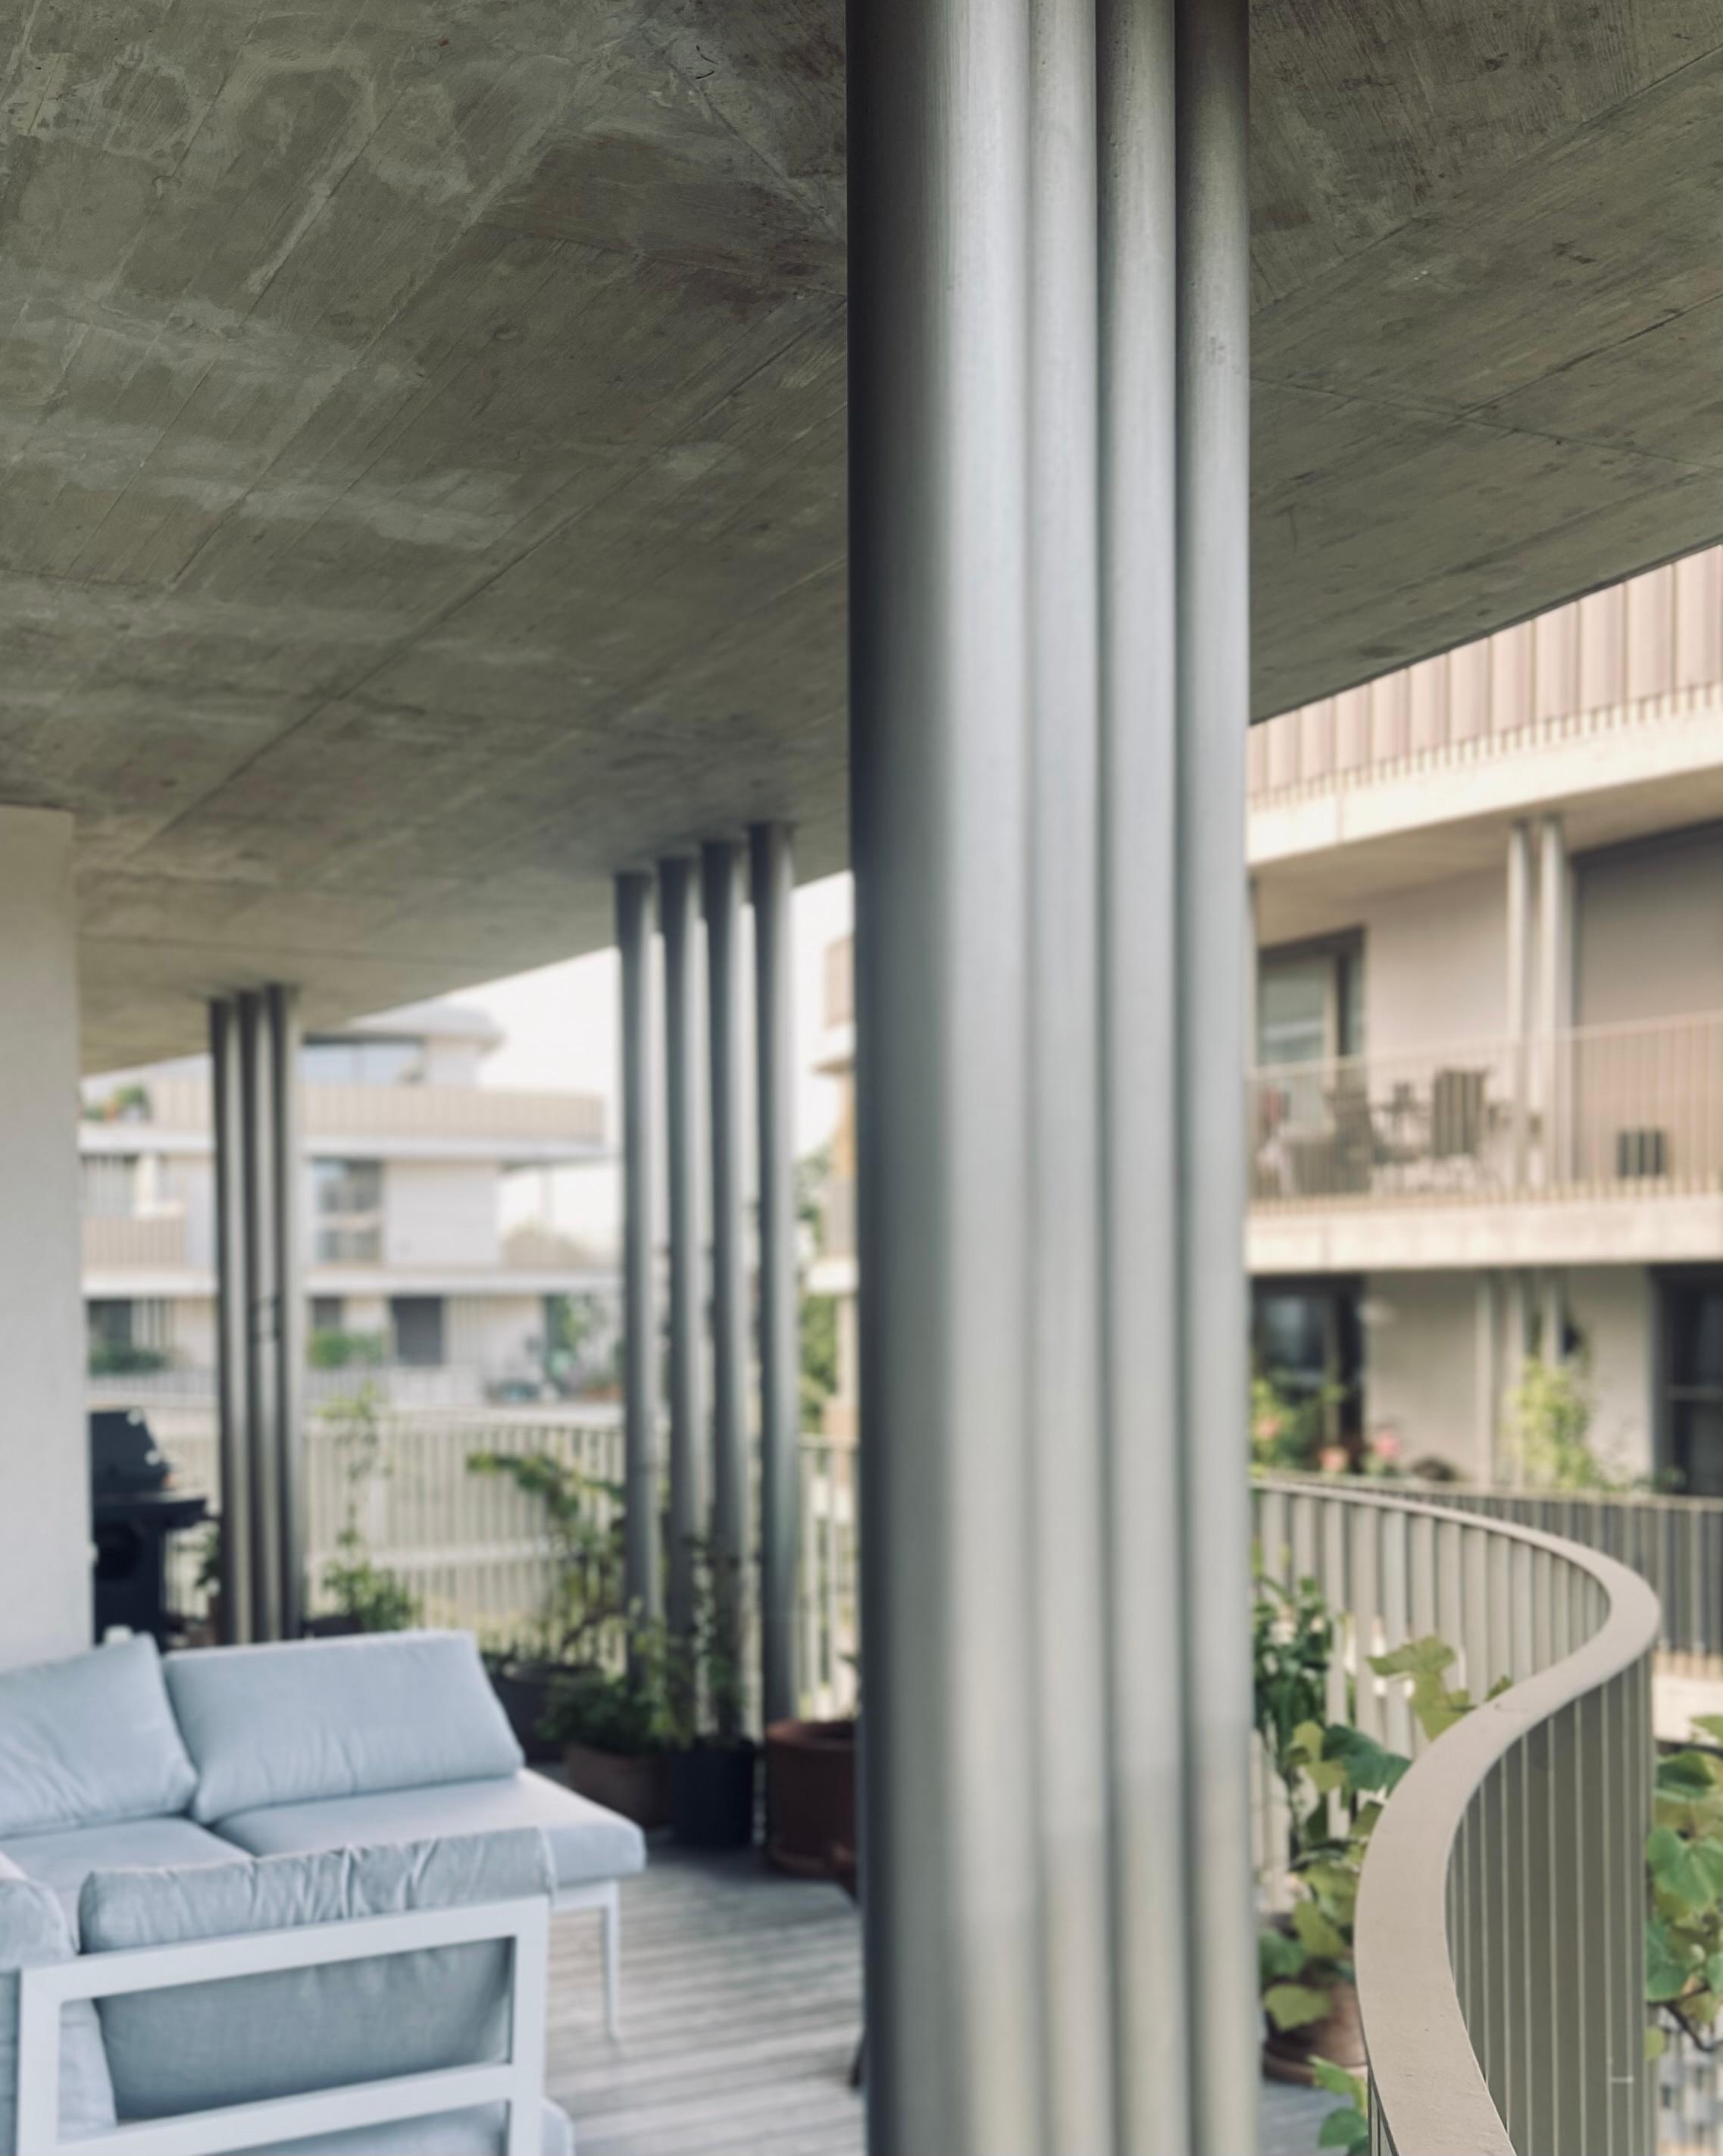 #terrasse #balkon #industrial #beton #sichtbeton